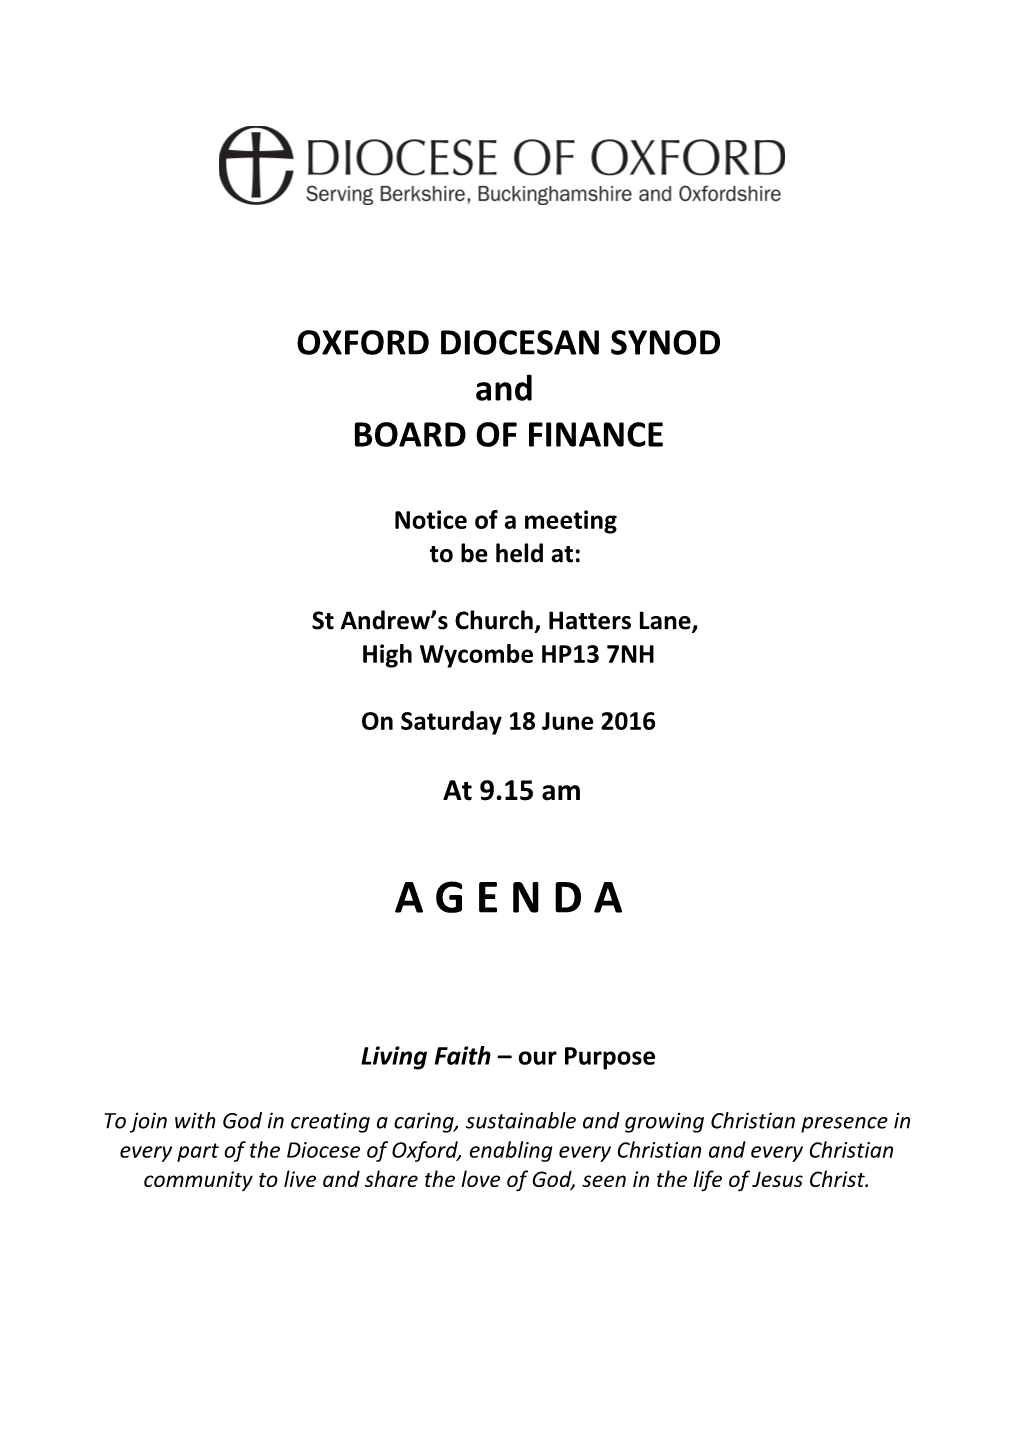 Oxford Diocesan Synod